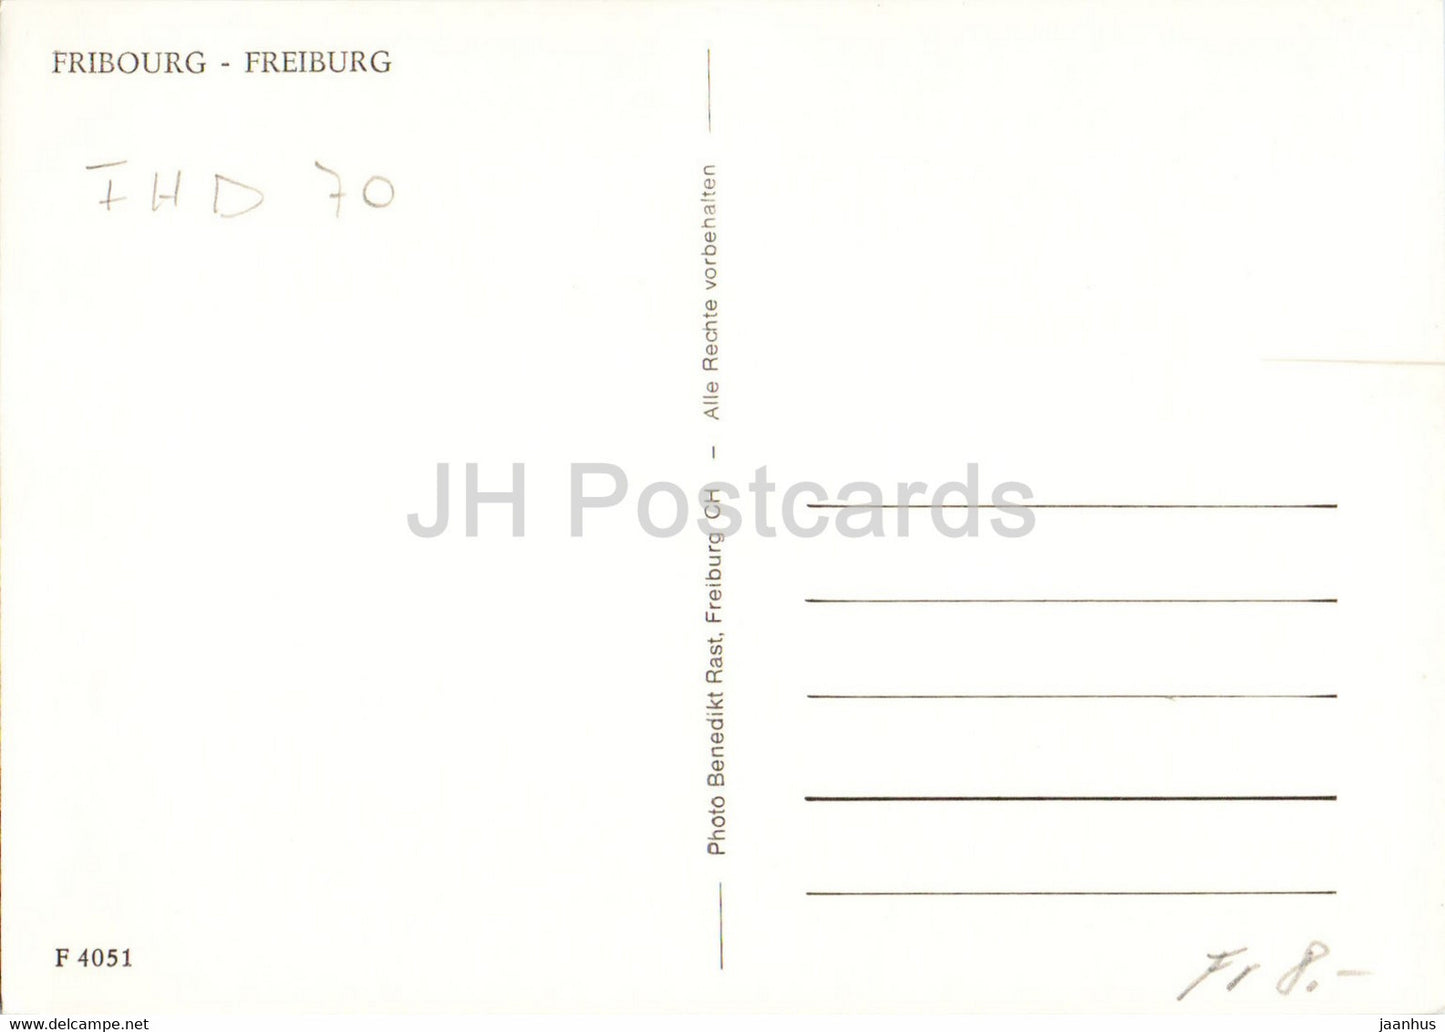 Freiburg - Freiburg - 4051 - alte Postkarte - Schweiz - gebraucht